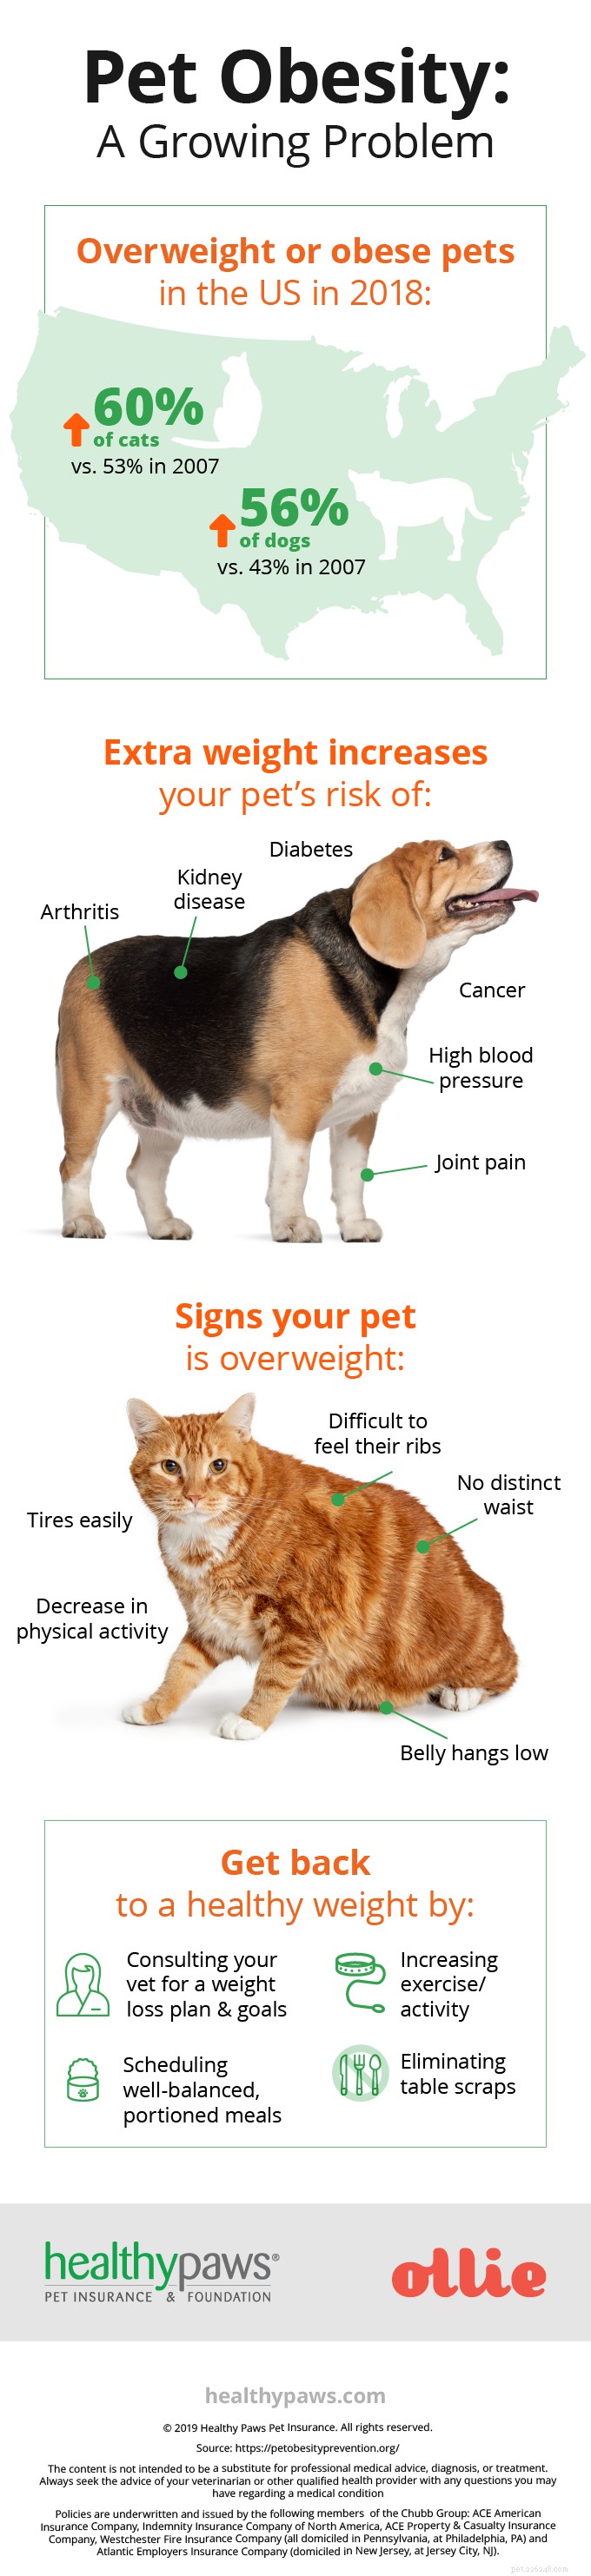 Obesità degli animali domestici:un problema in crescita